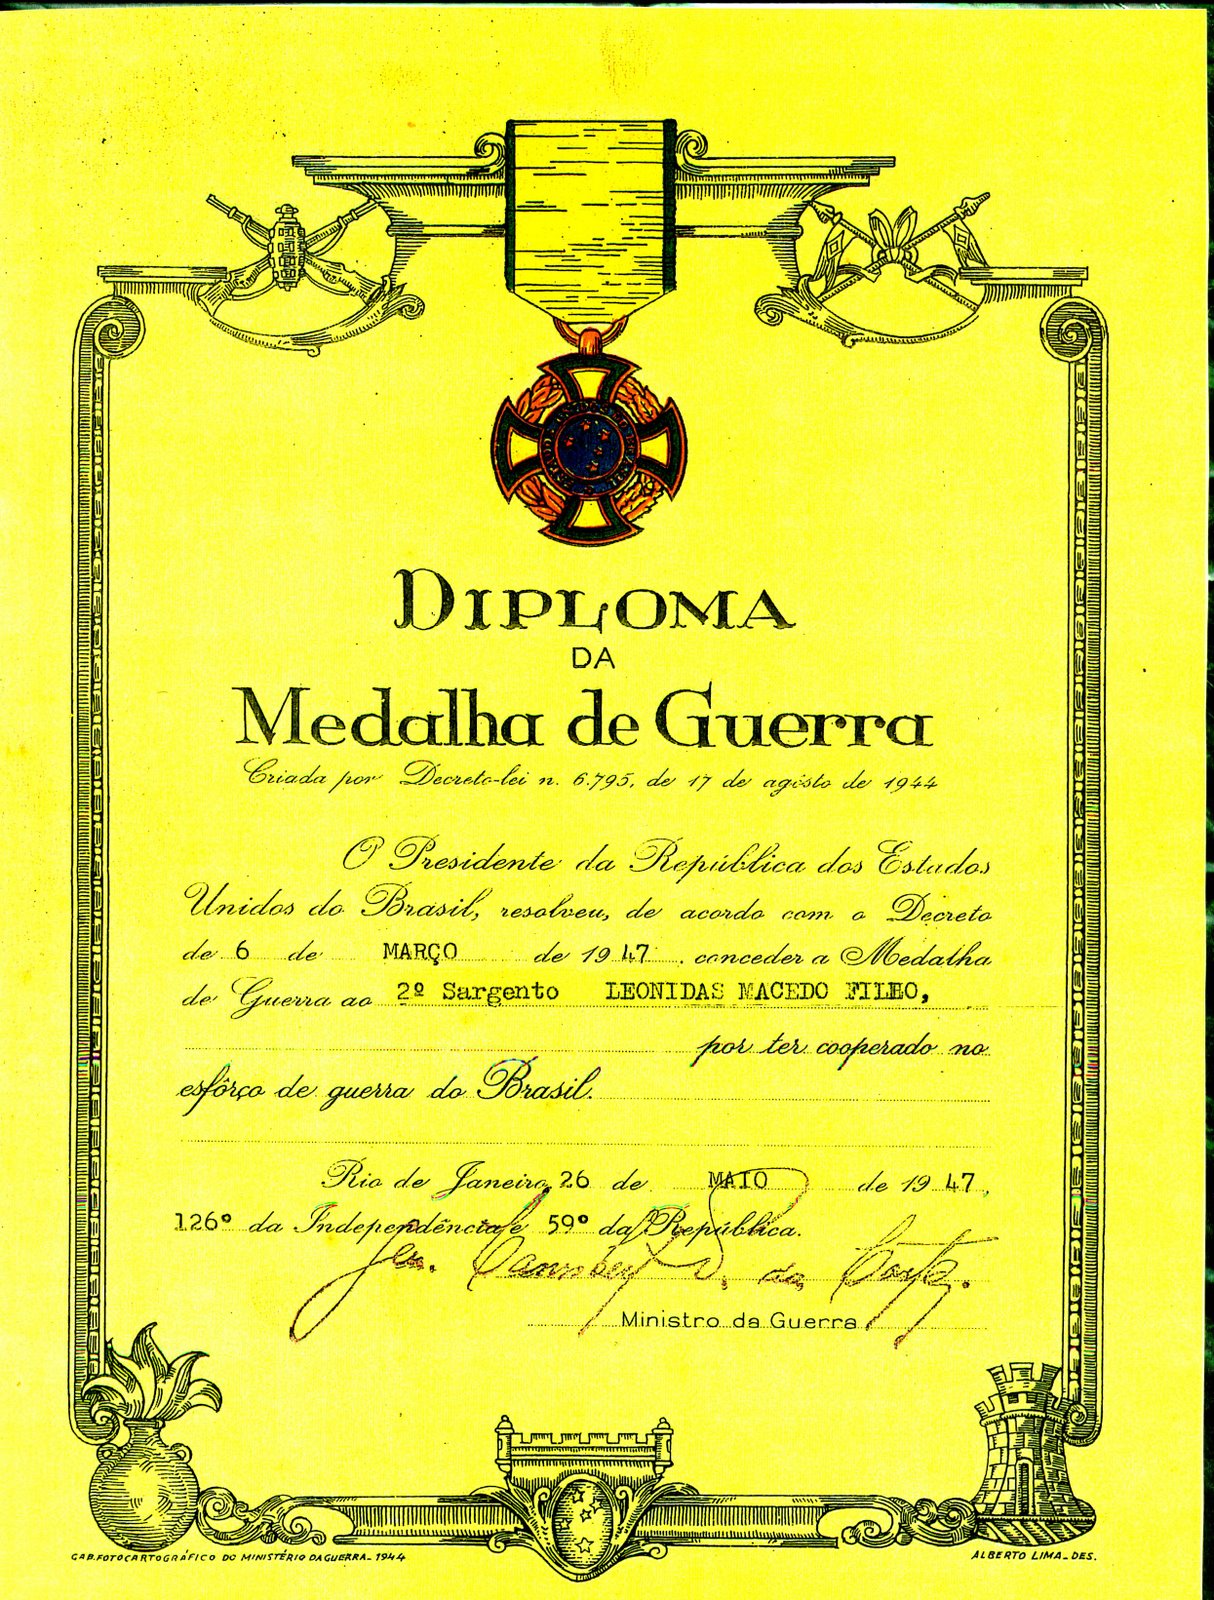 [I-10+Diploma+Medalha+de+Guerra.JPG]